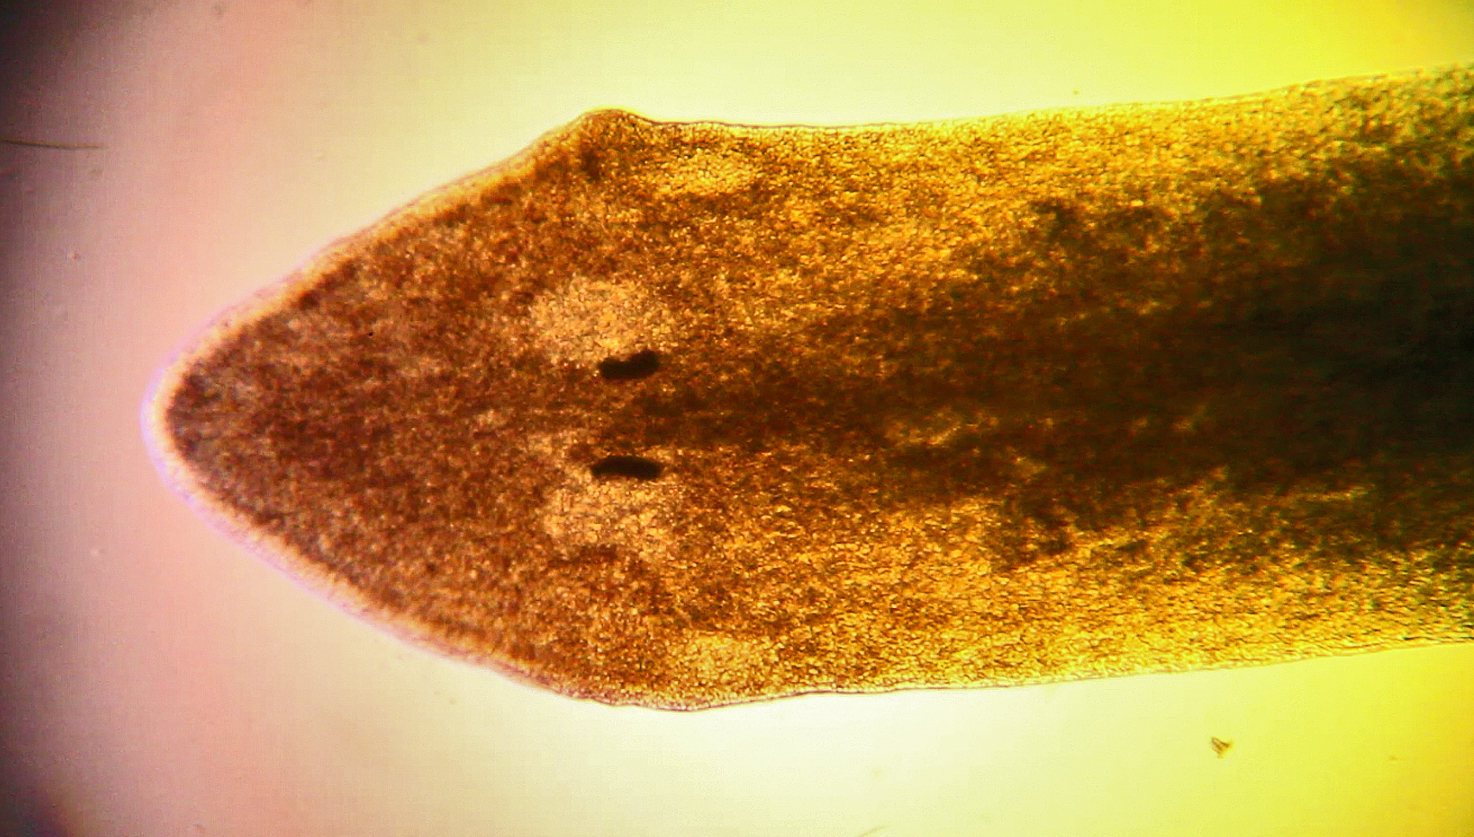 Dugesia gonocephala, la planaire type